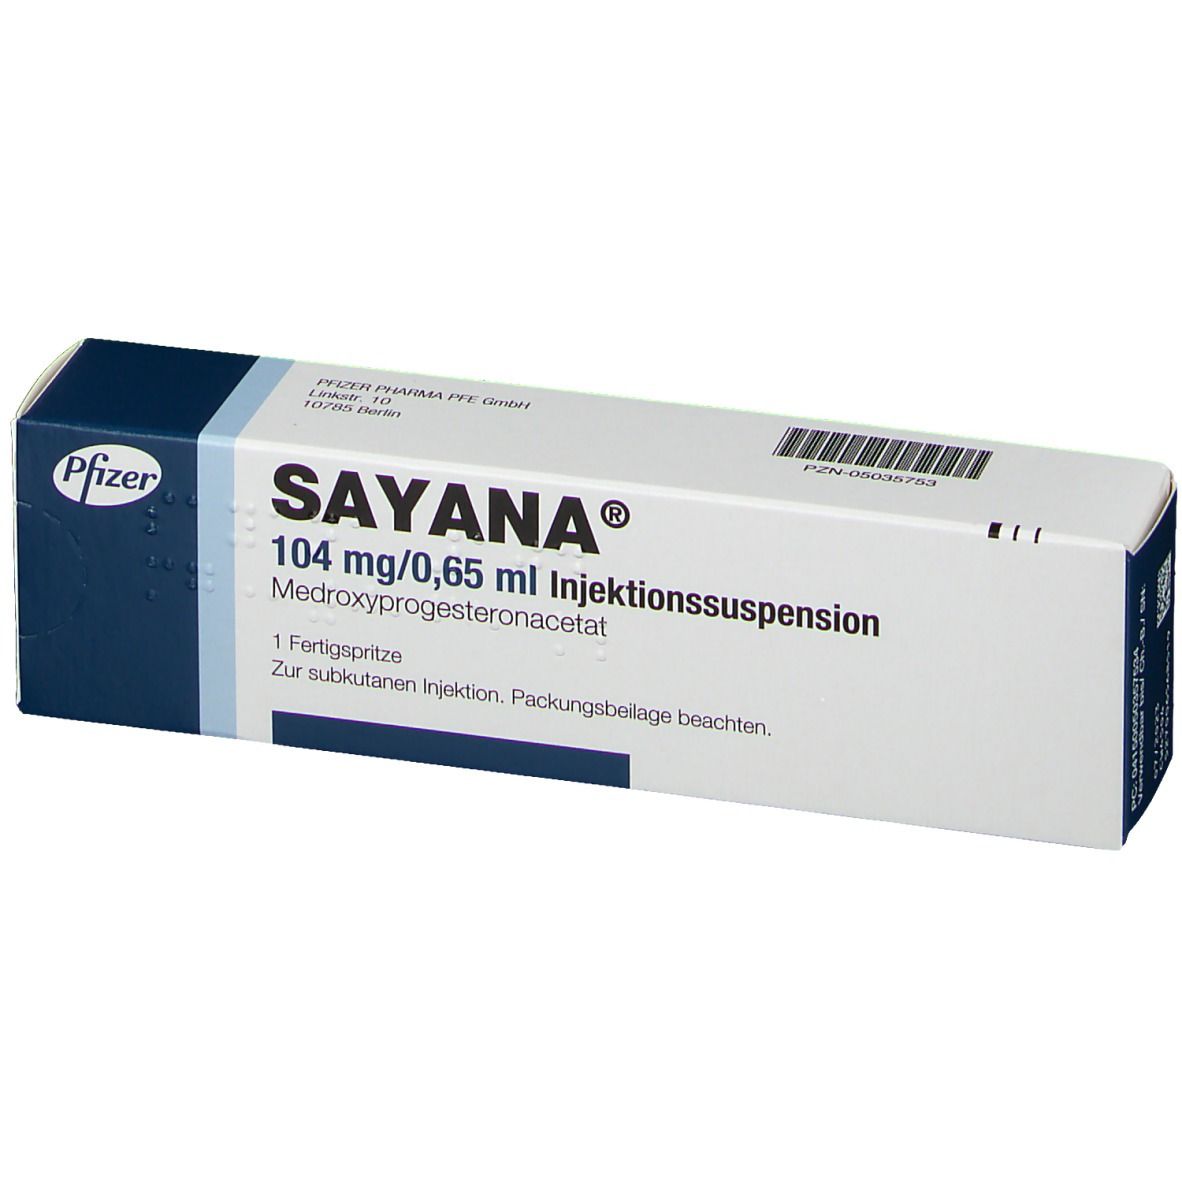 SAYANA® 104 mg/0,65 ml